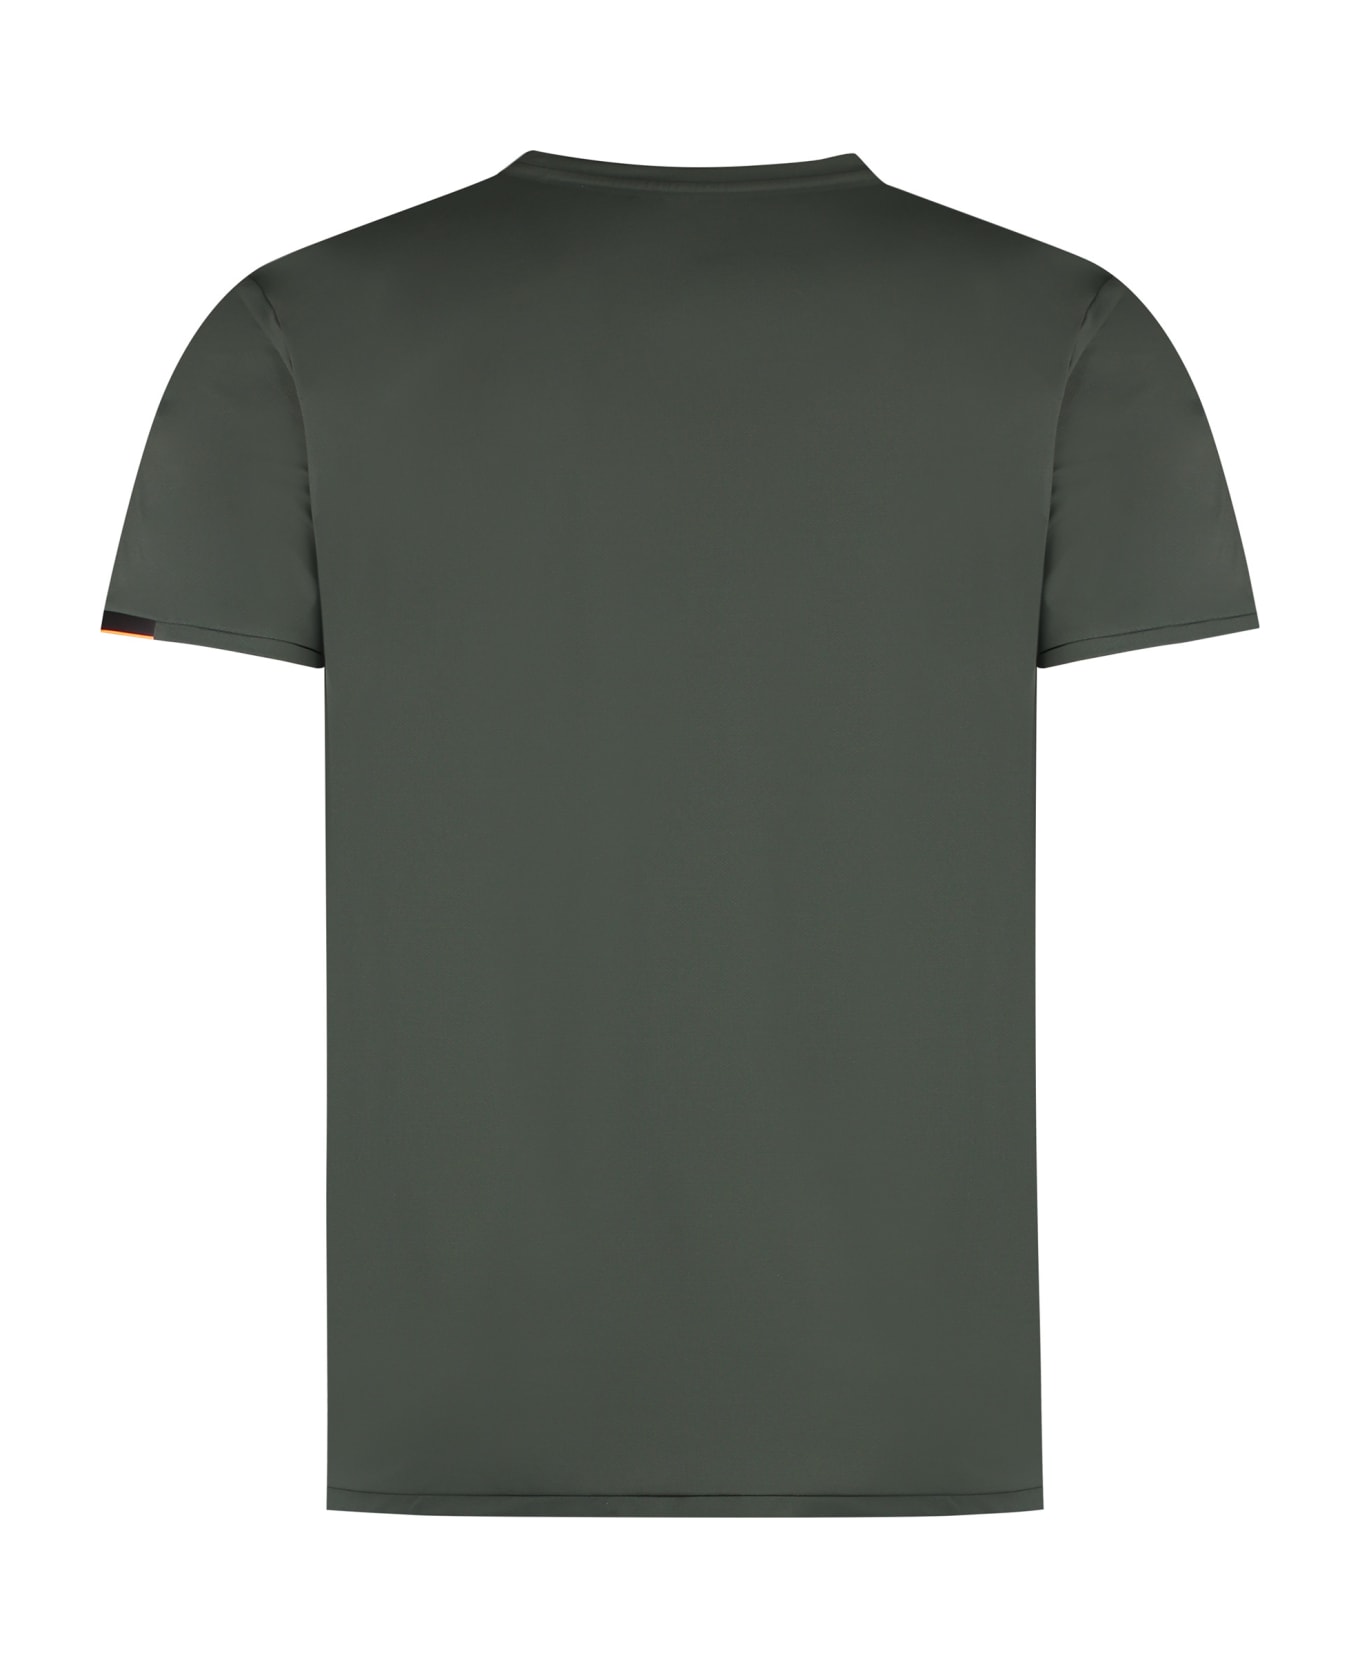 RRD - Roberto Ricci Design Oxford Techno Fabric T-shirt - Bosco